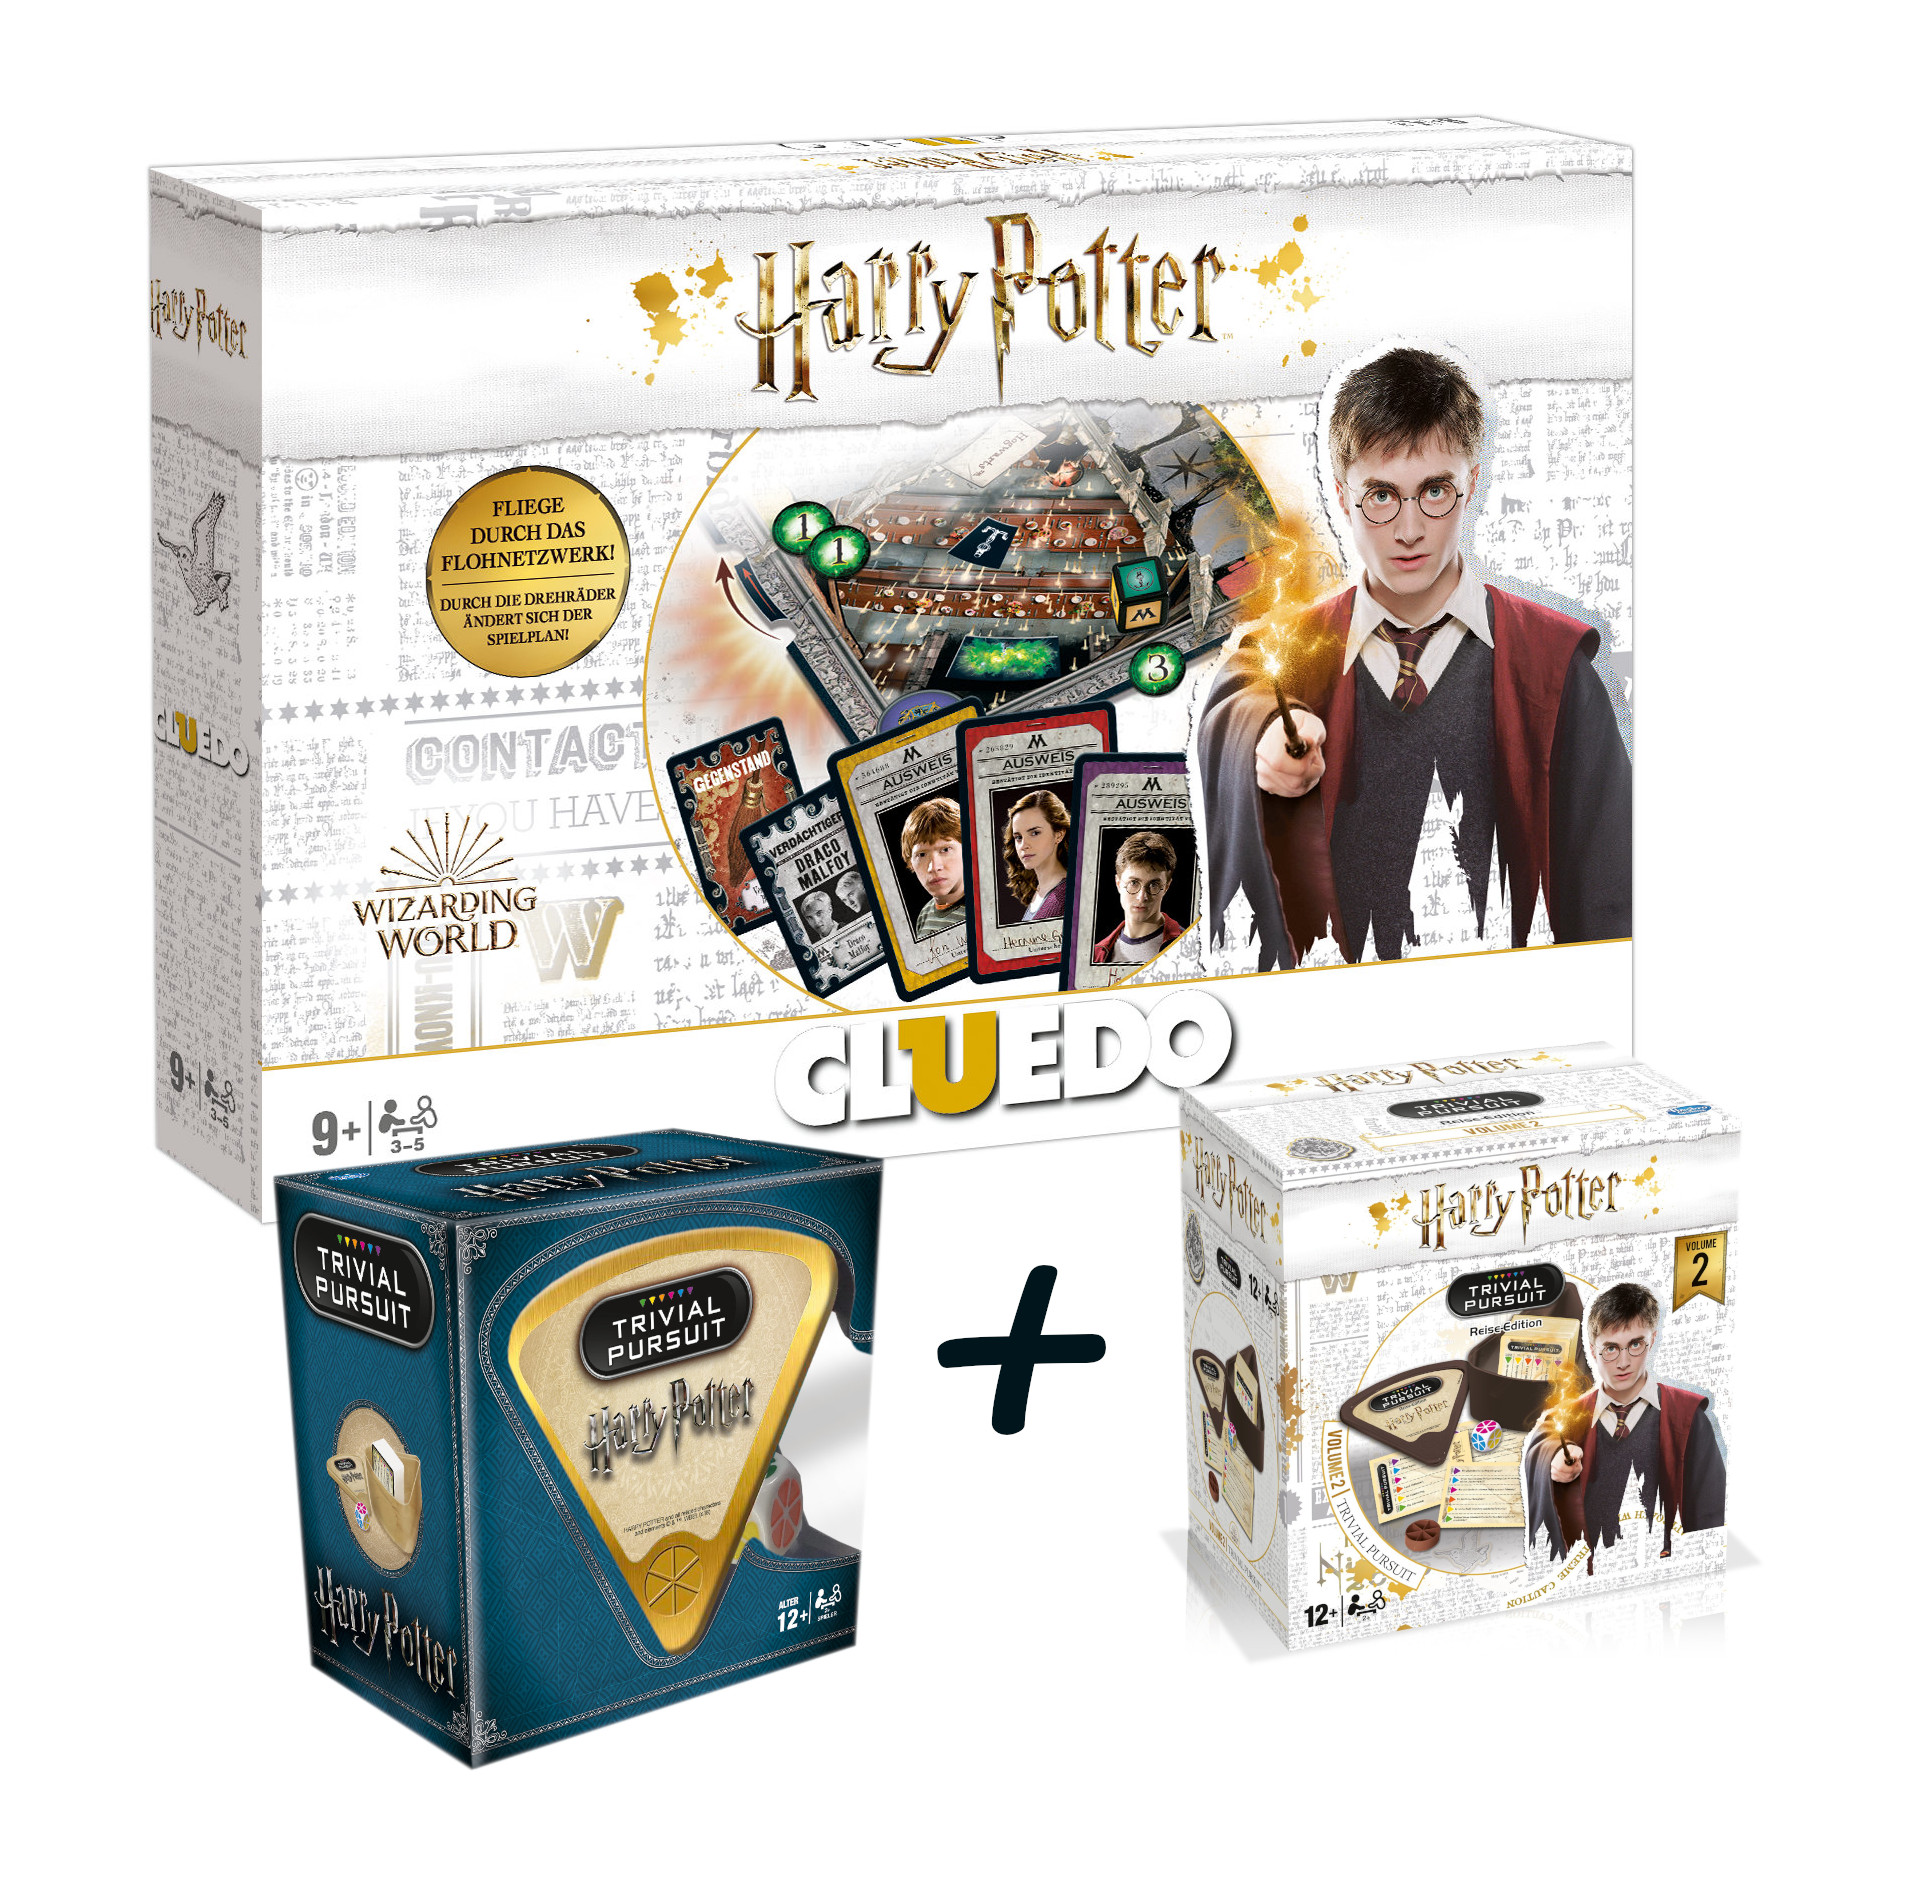 3er Set: Cluedo - Harry Potter inkl. Trivial Pursuit Vol. 1 + 2